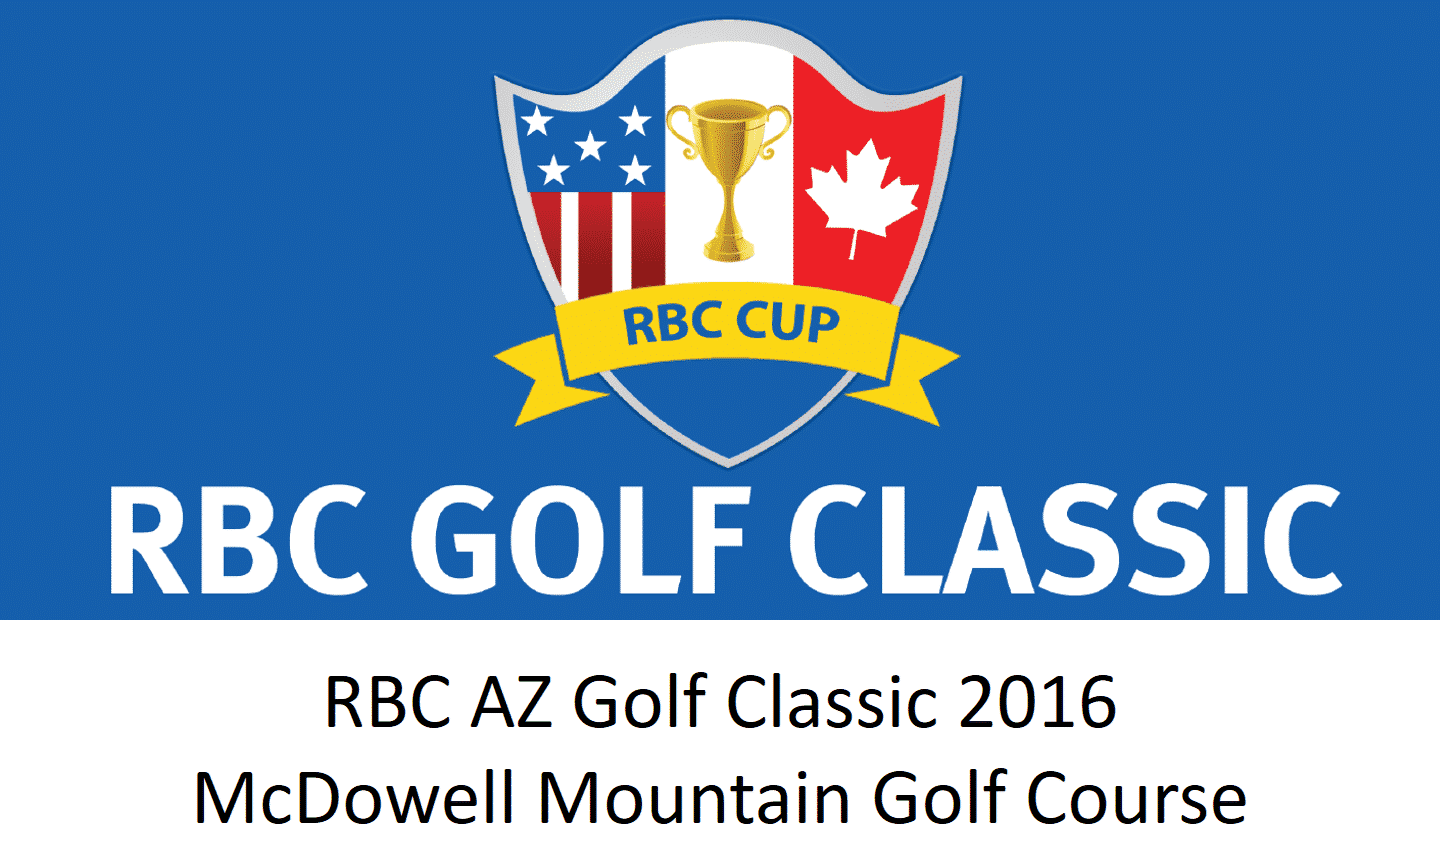 RBC Golf Classic in Arizona